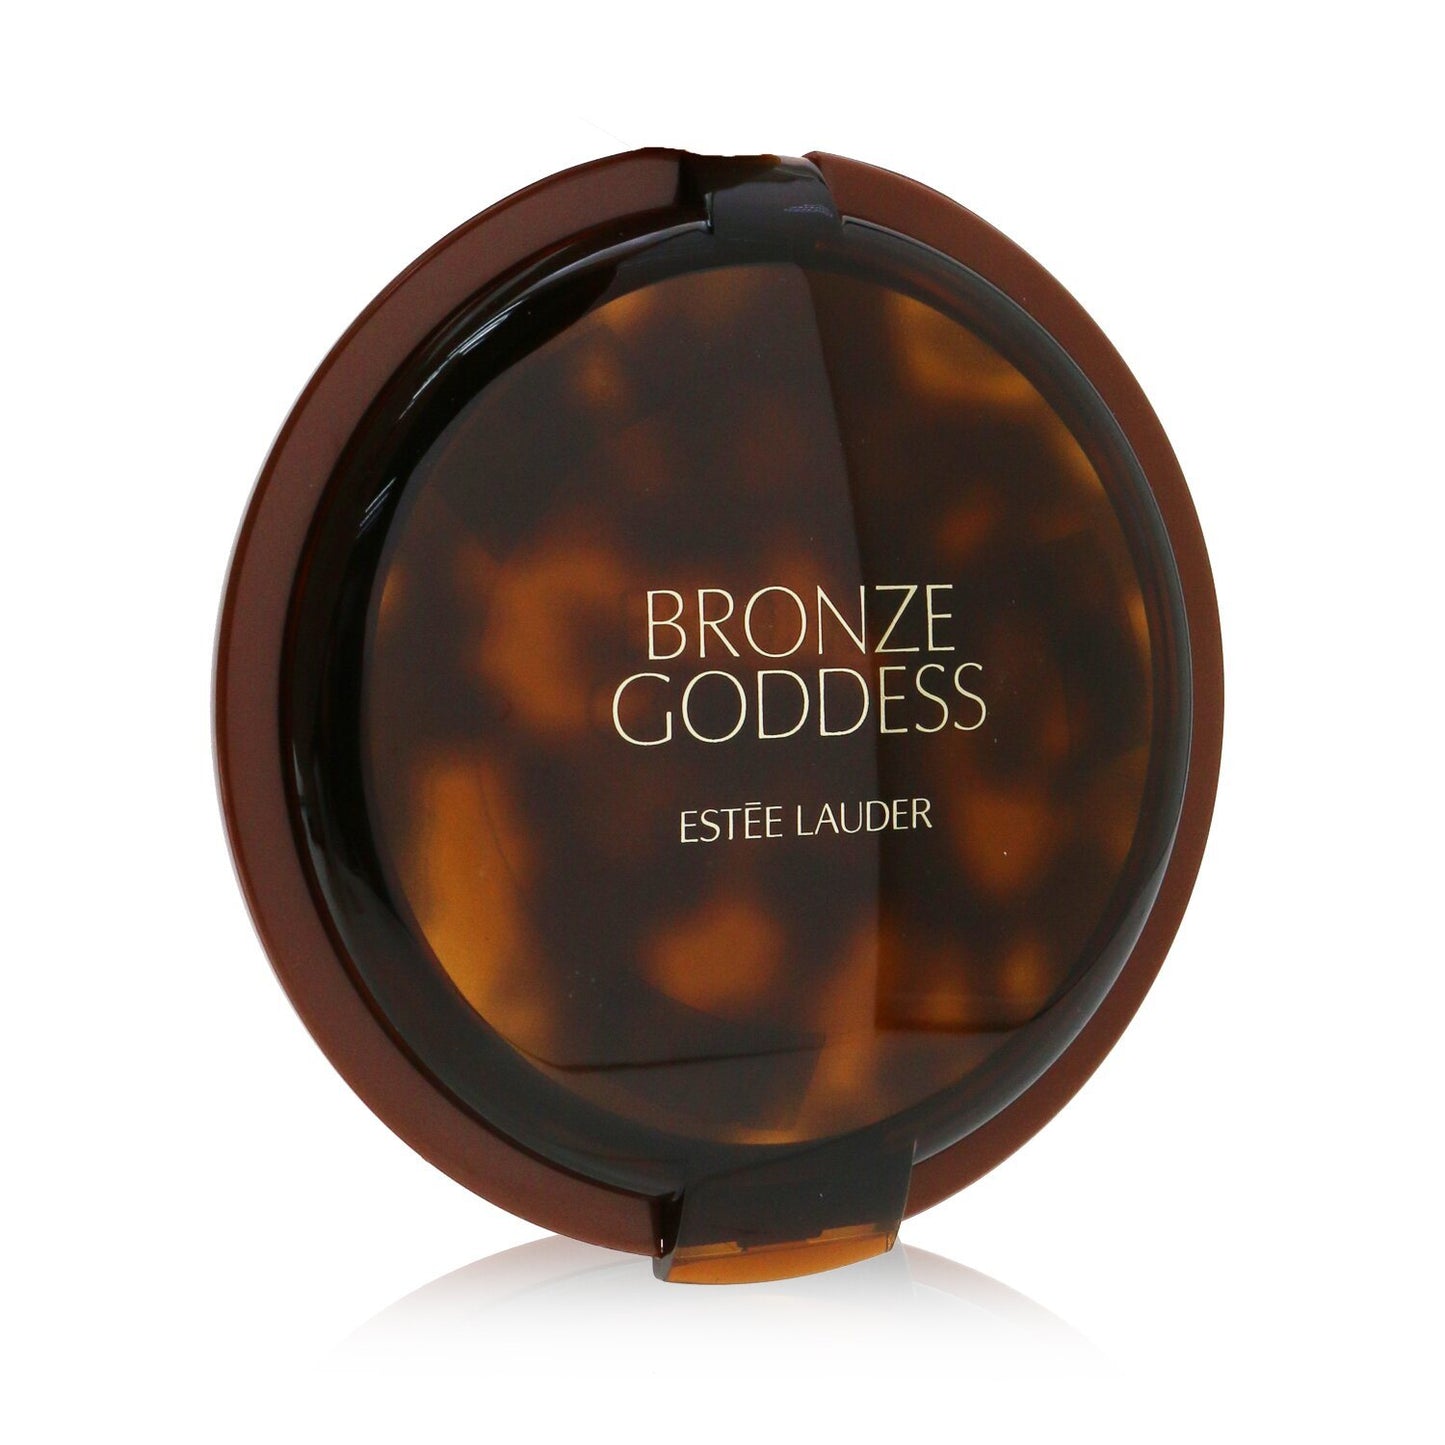 ESTEE LAUDER - Bronze Goddess Powder Bronzer - # 03 Medium Deep YER2-03 / 240501 21g/0.74oz